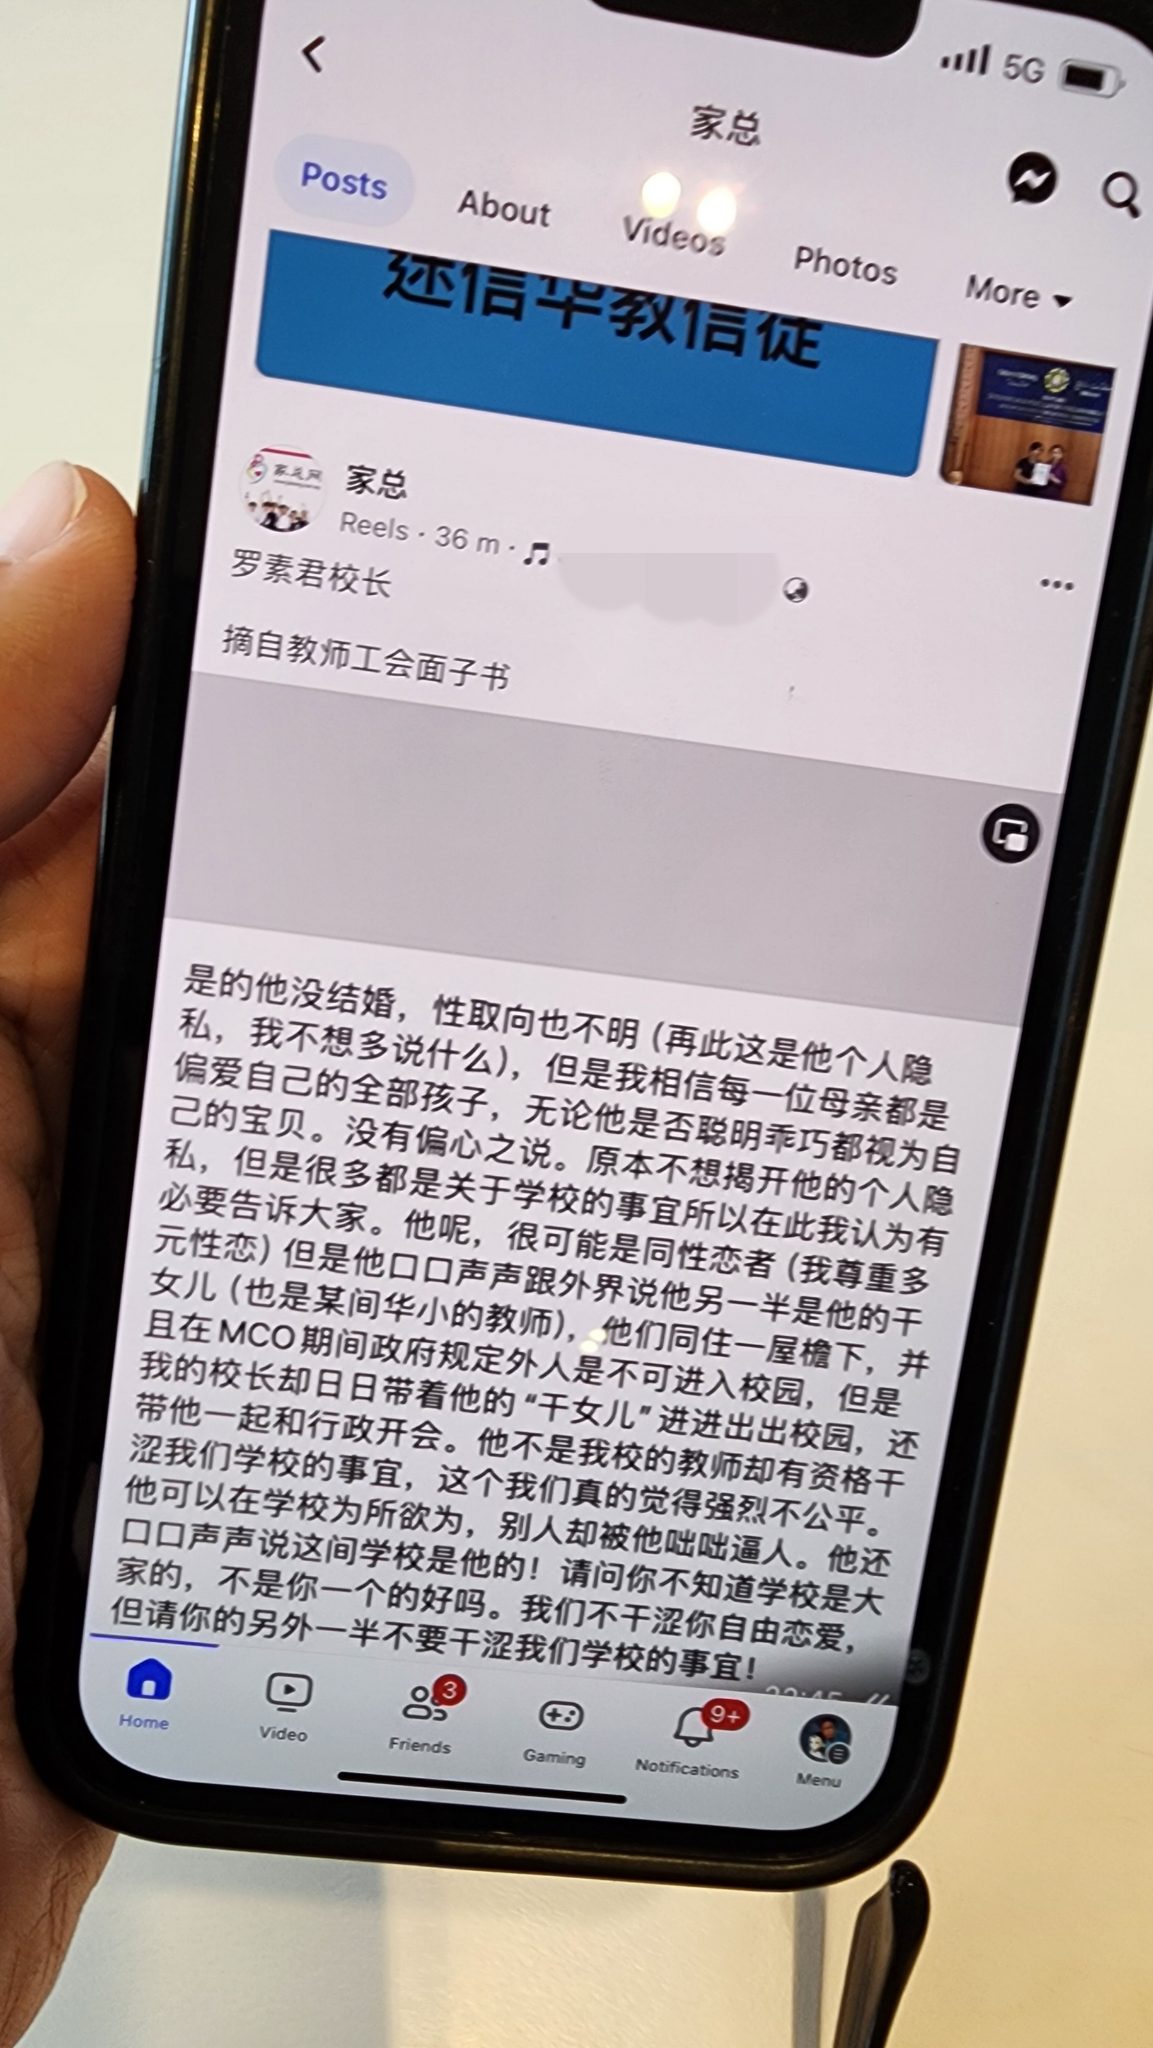 社交媒体近日广传“受害者”指控校长职场欺压老师的言论。